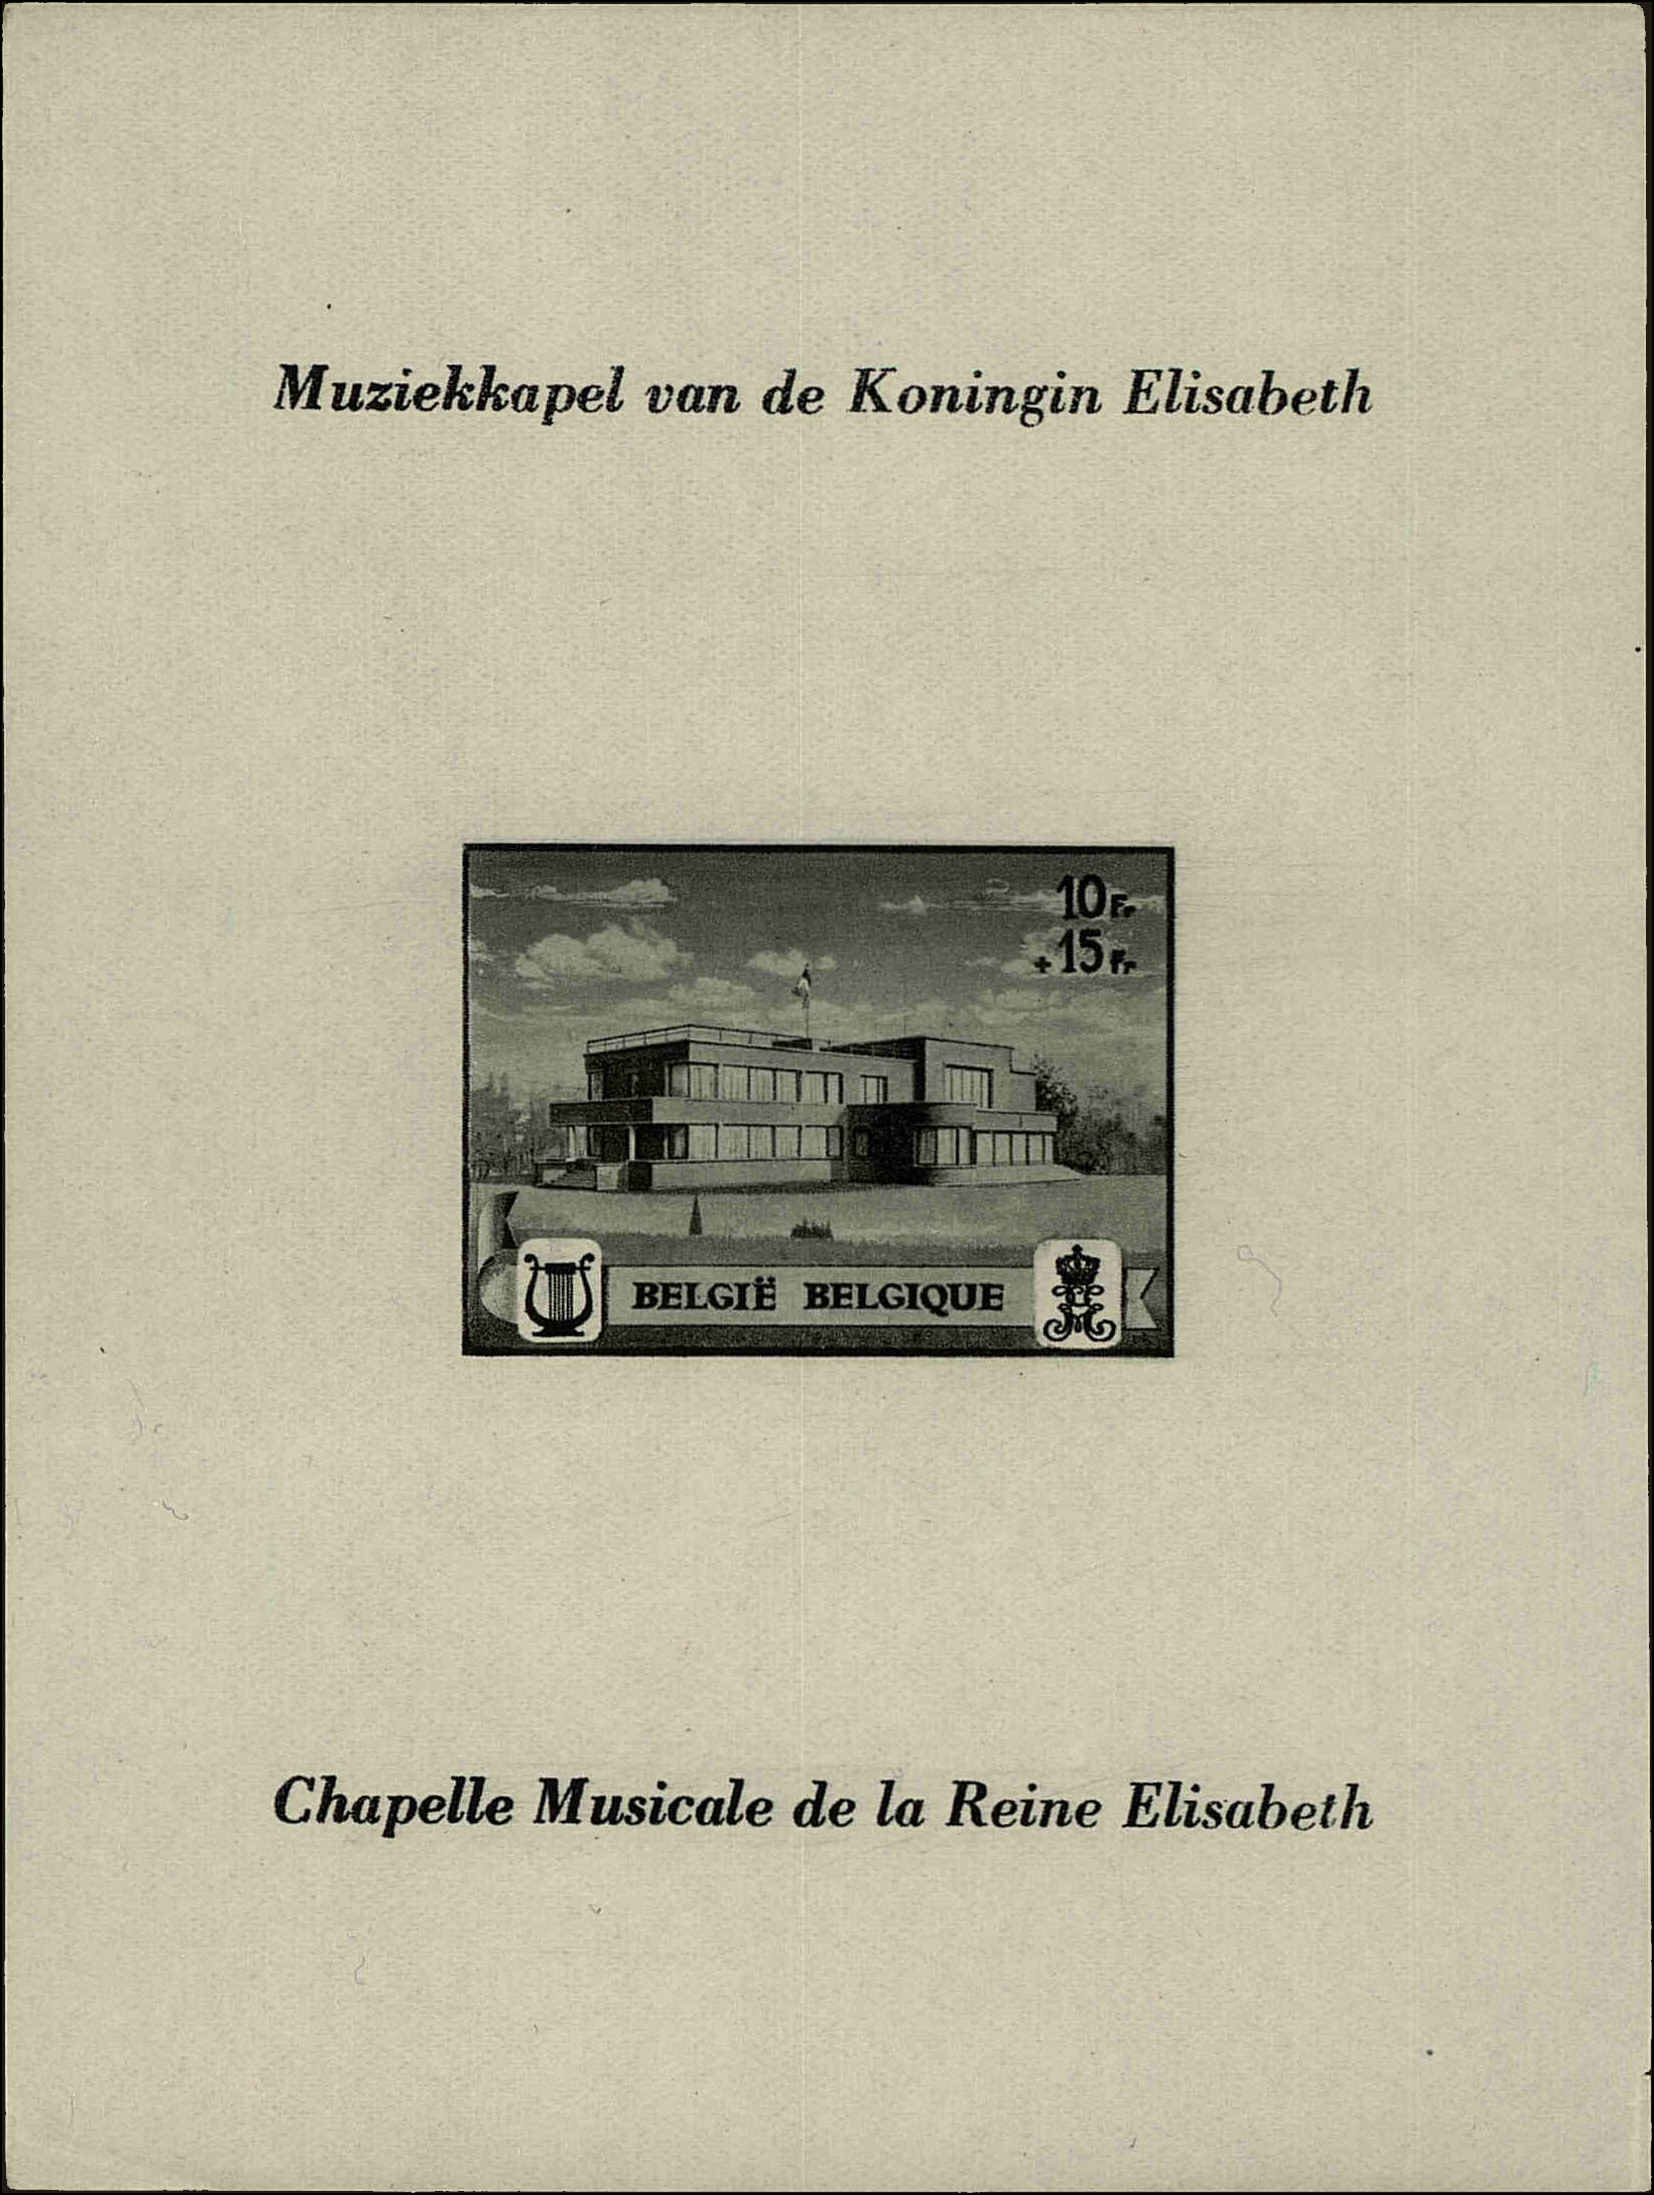 Front view of Belgium B318 collectors stamp